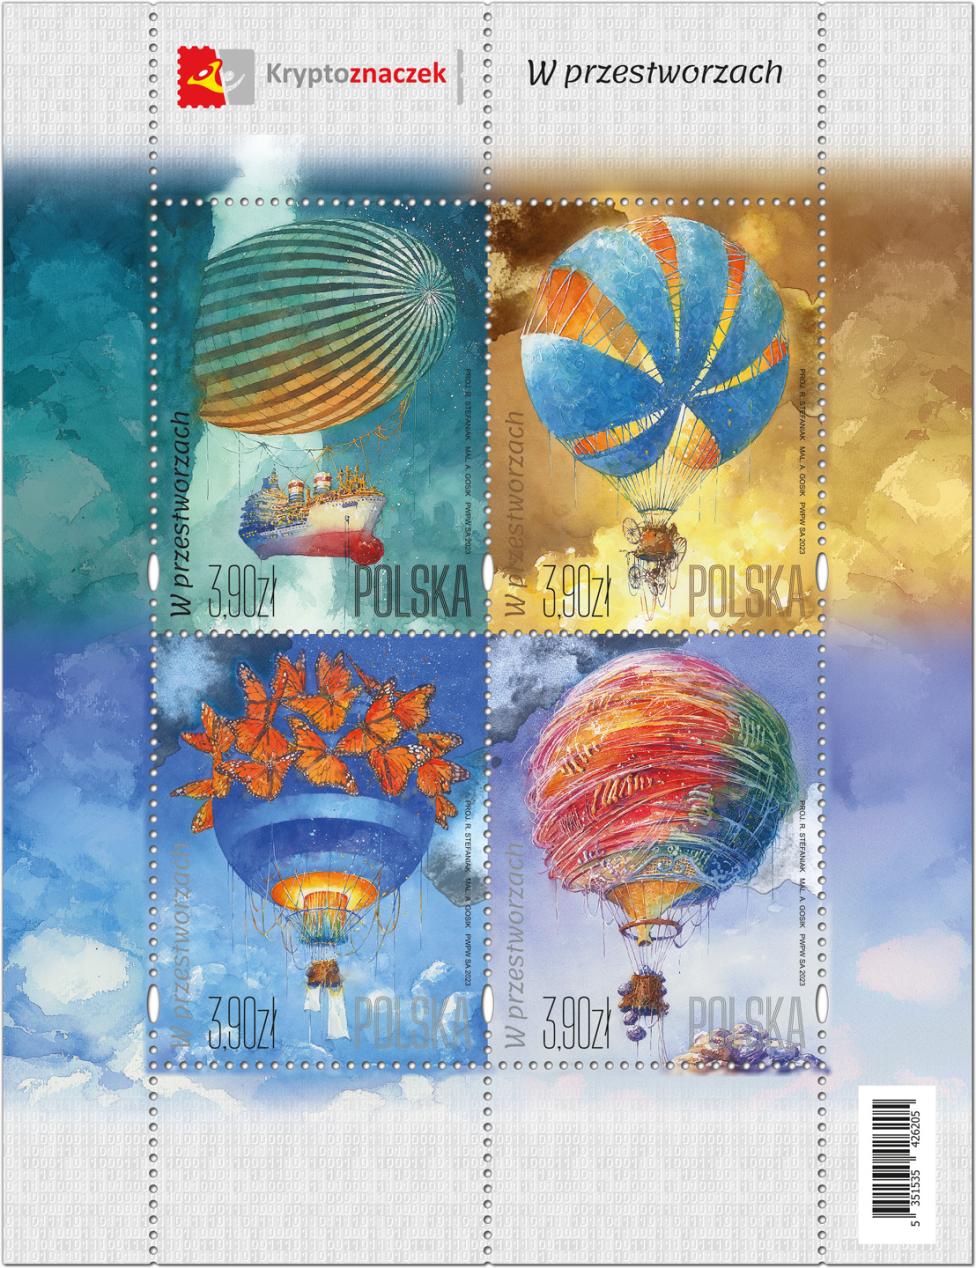 Cztery znaczki przedstawiające w akwareli Andrzeja Gosika surrealistyczne balony (fot. Poczta Polska)